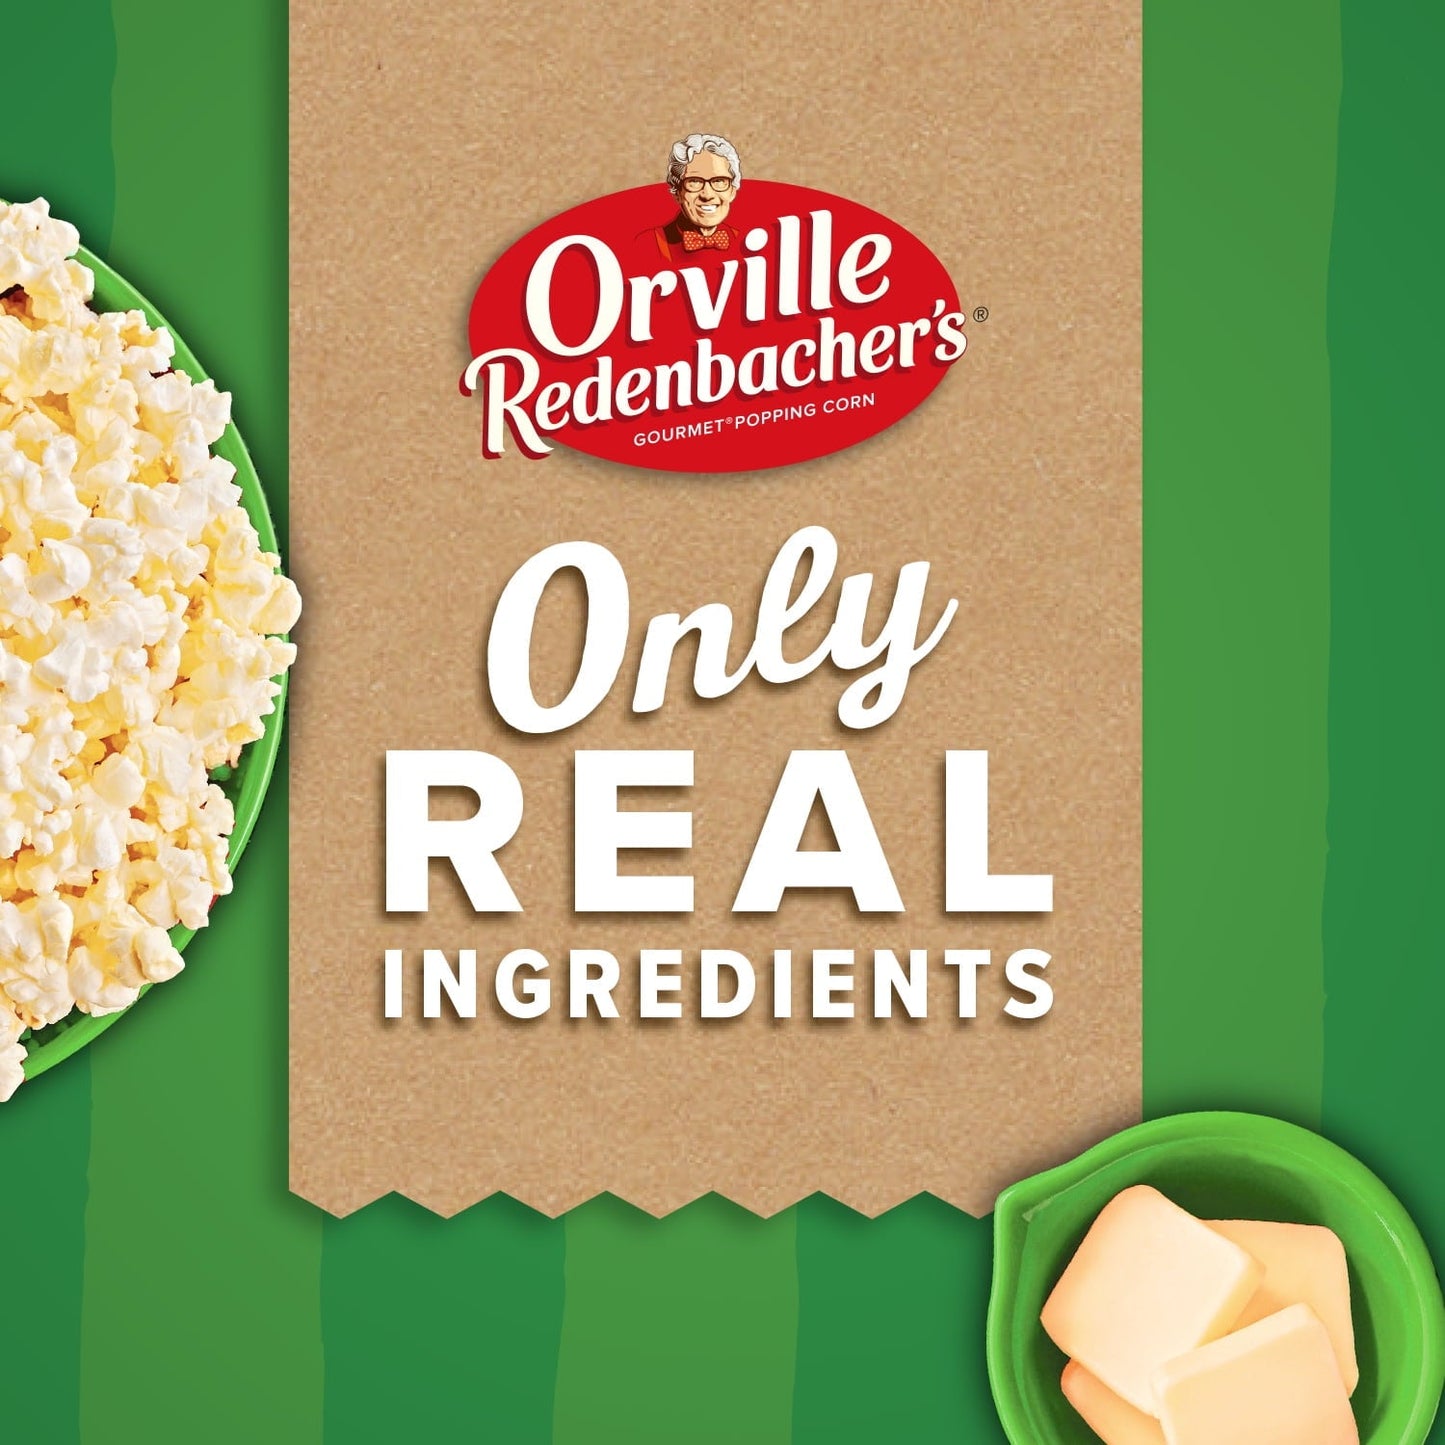 Orville Redenbacher's SmartPop! Butter Microwave Popcorn, 2.69 Oz, 12 Ct